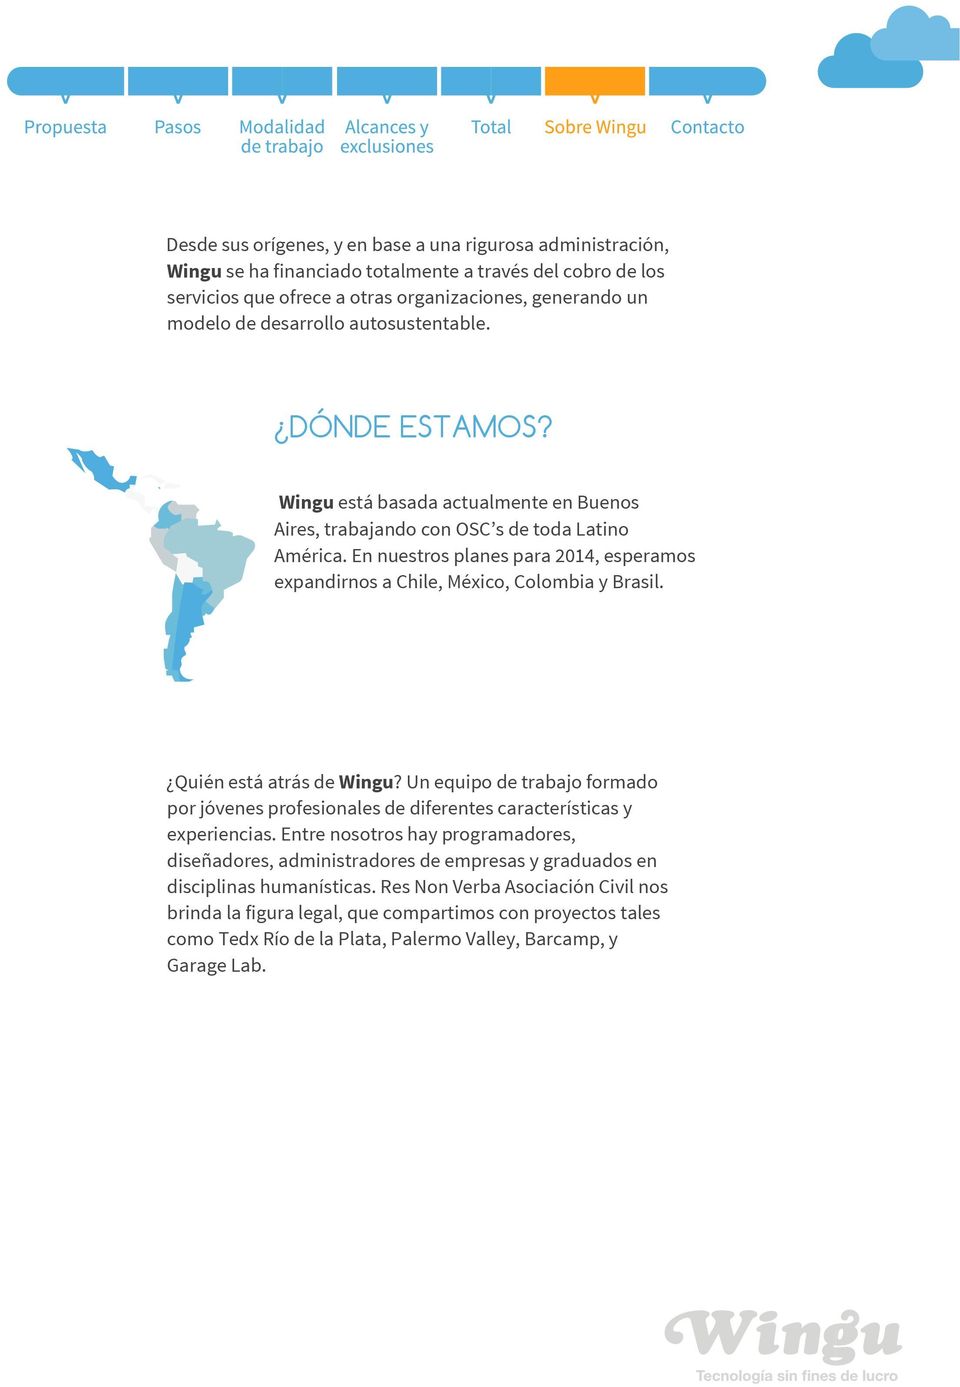 En nuestros planes para 2014, esperamos expandirnos a Chile, México, Colombia y Brasil. Quién está atrás de Wingu?